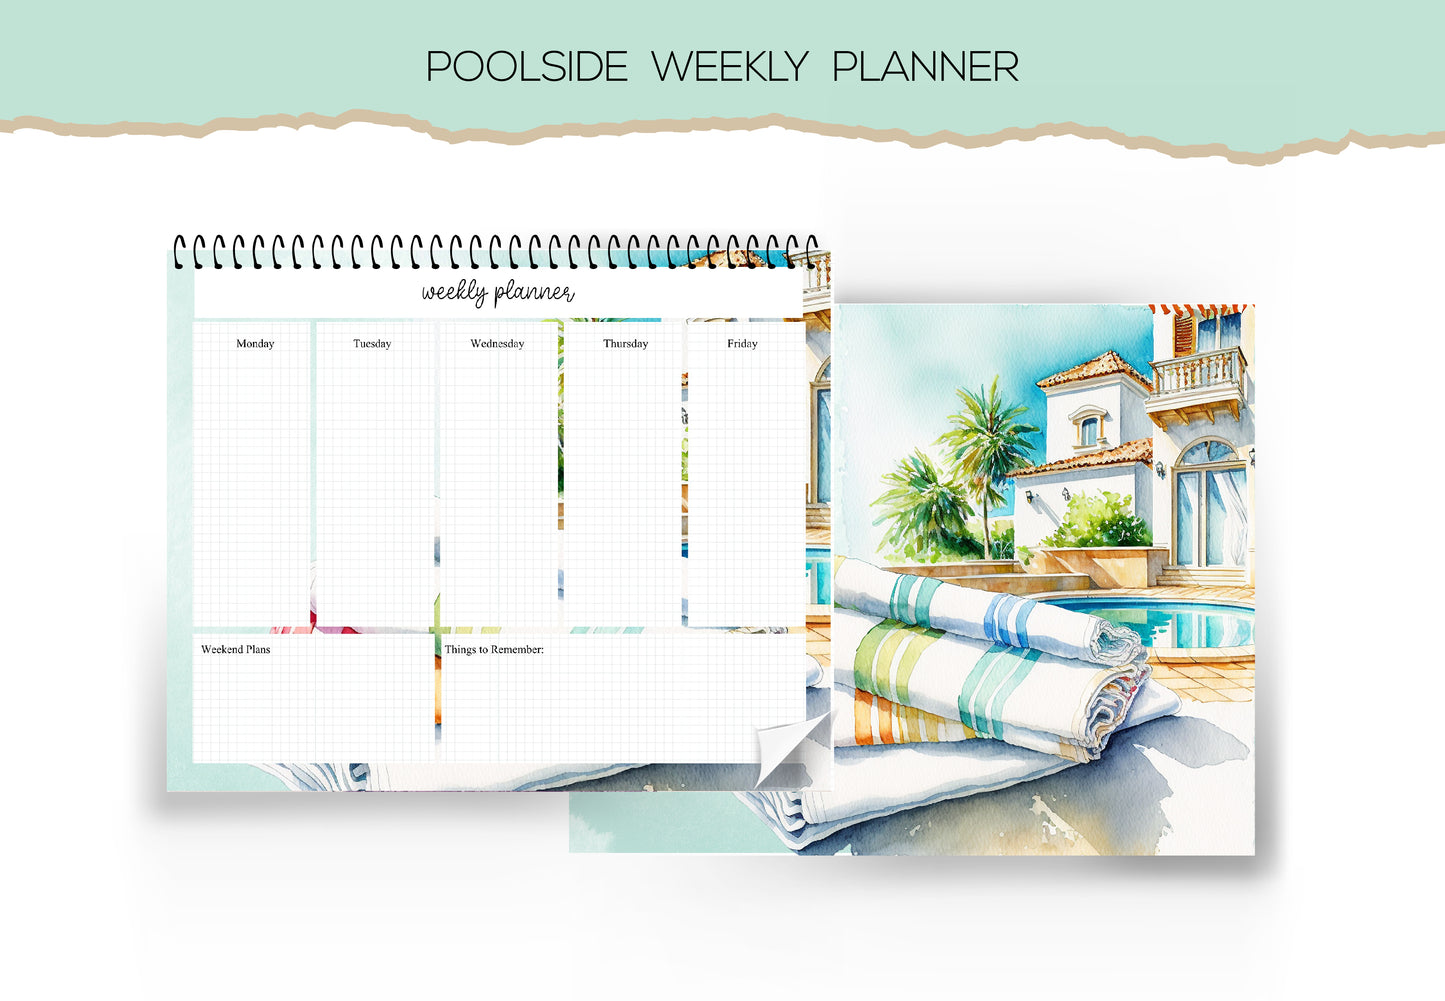 Poolside Weekly Planner